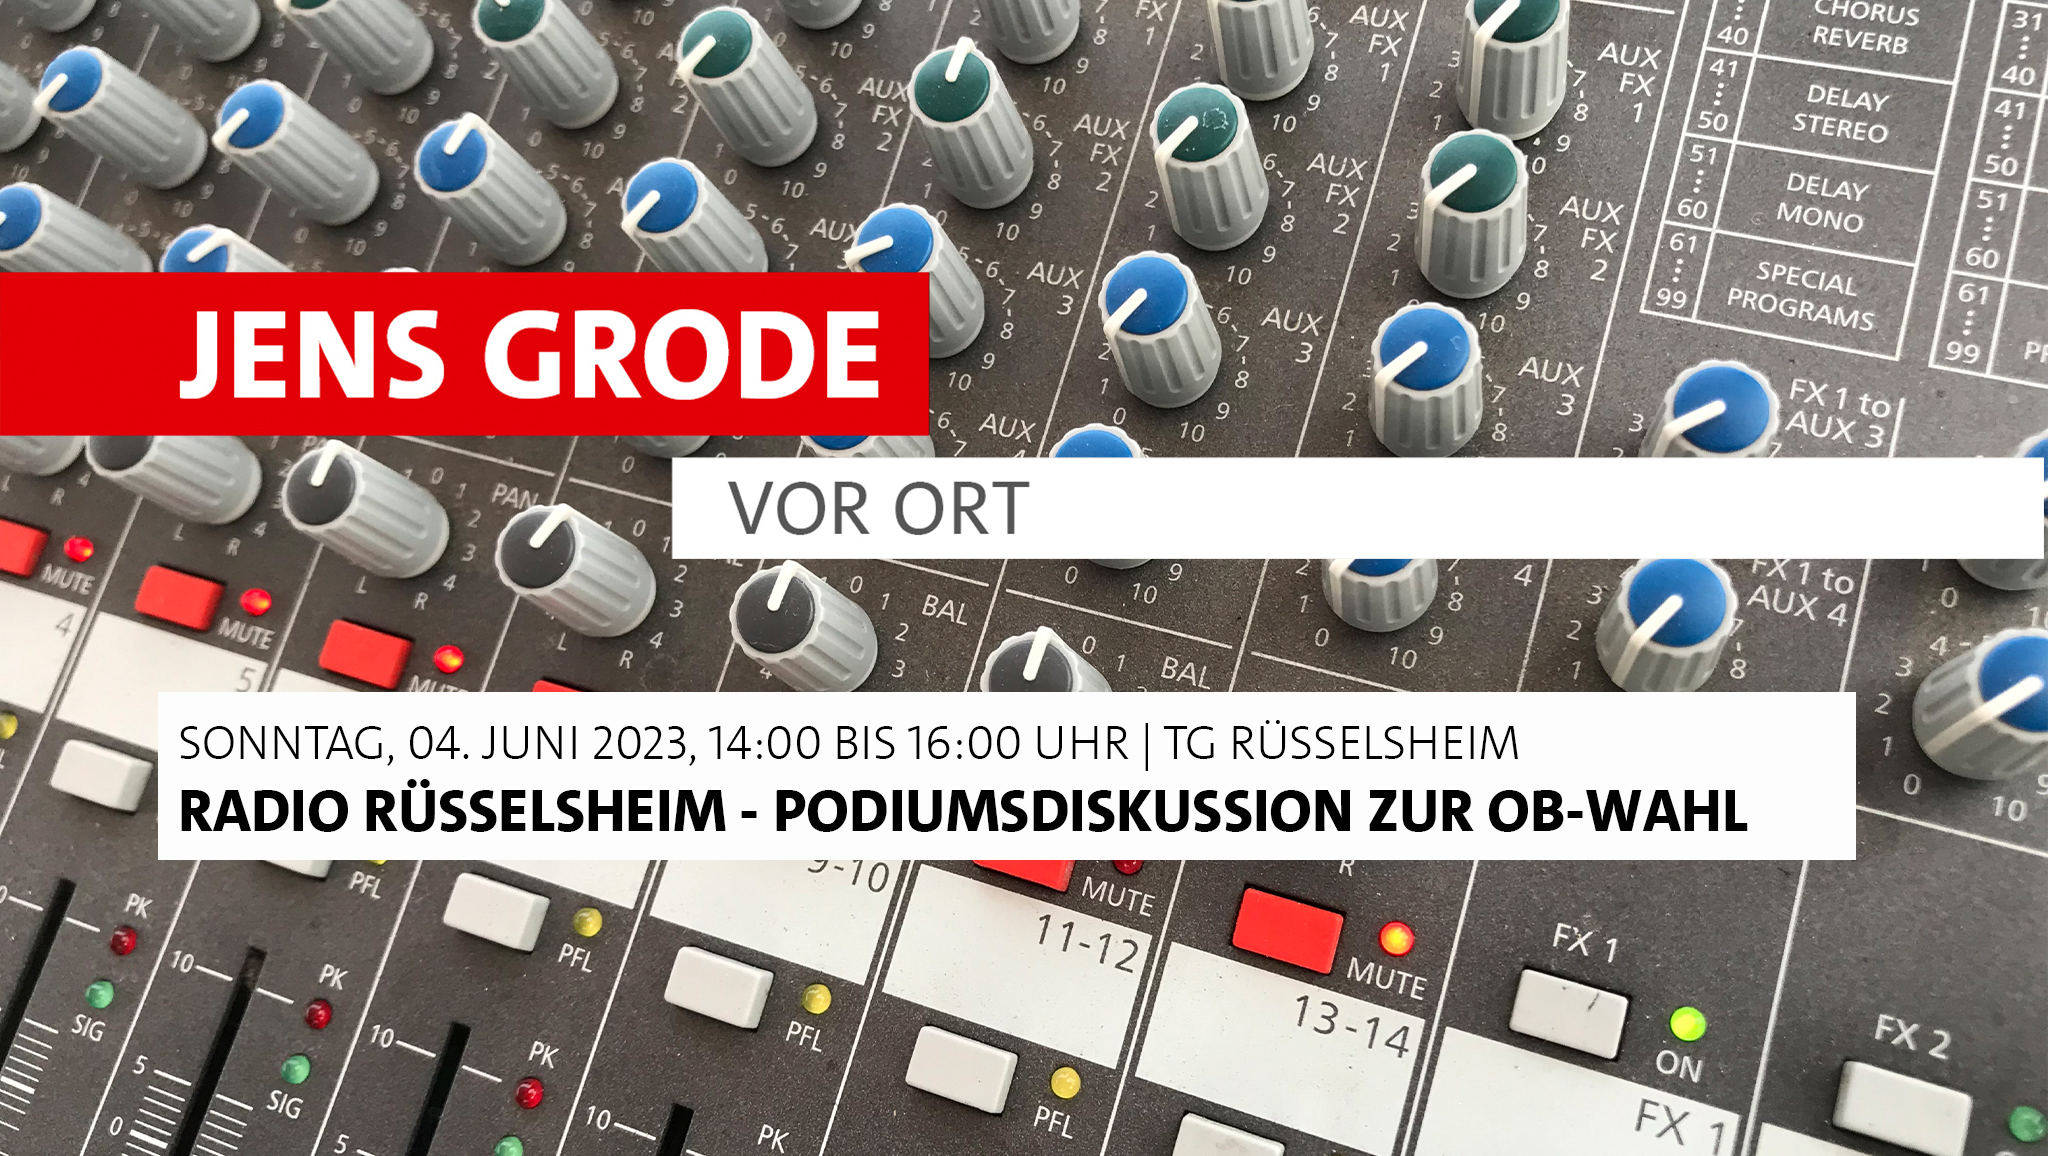 Radio Rüsselsheim - Podiumsdiskussion zur OB-Wahl